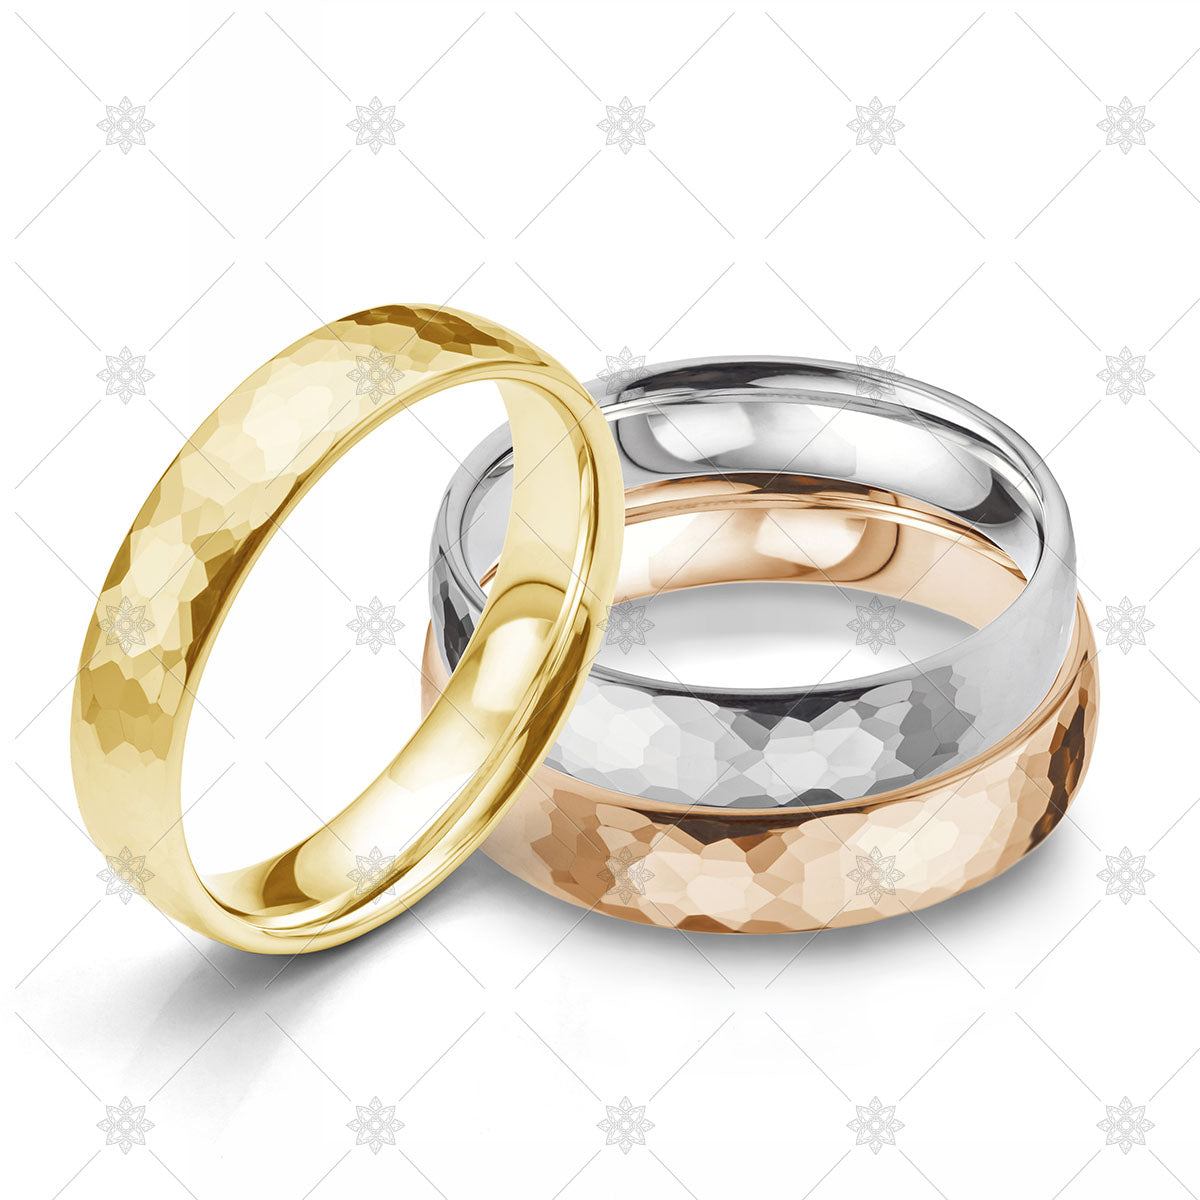 Wedding ring stack stock image